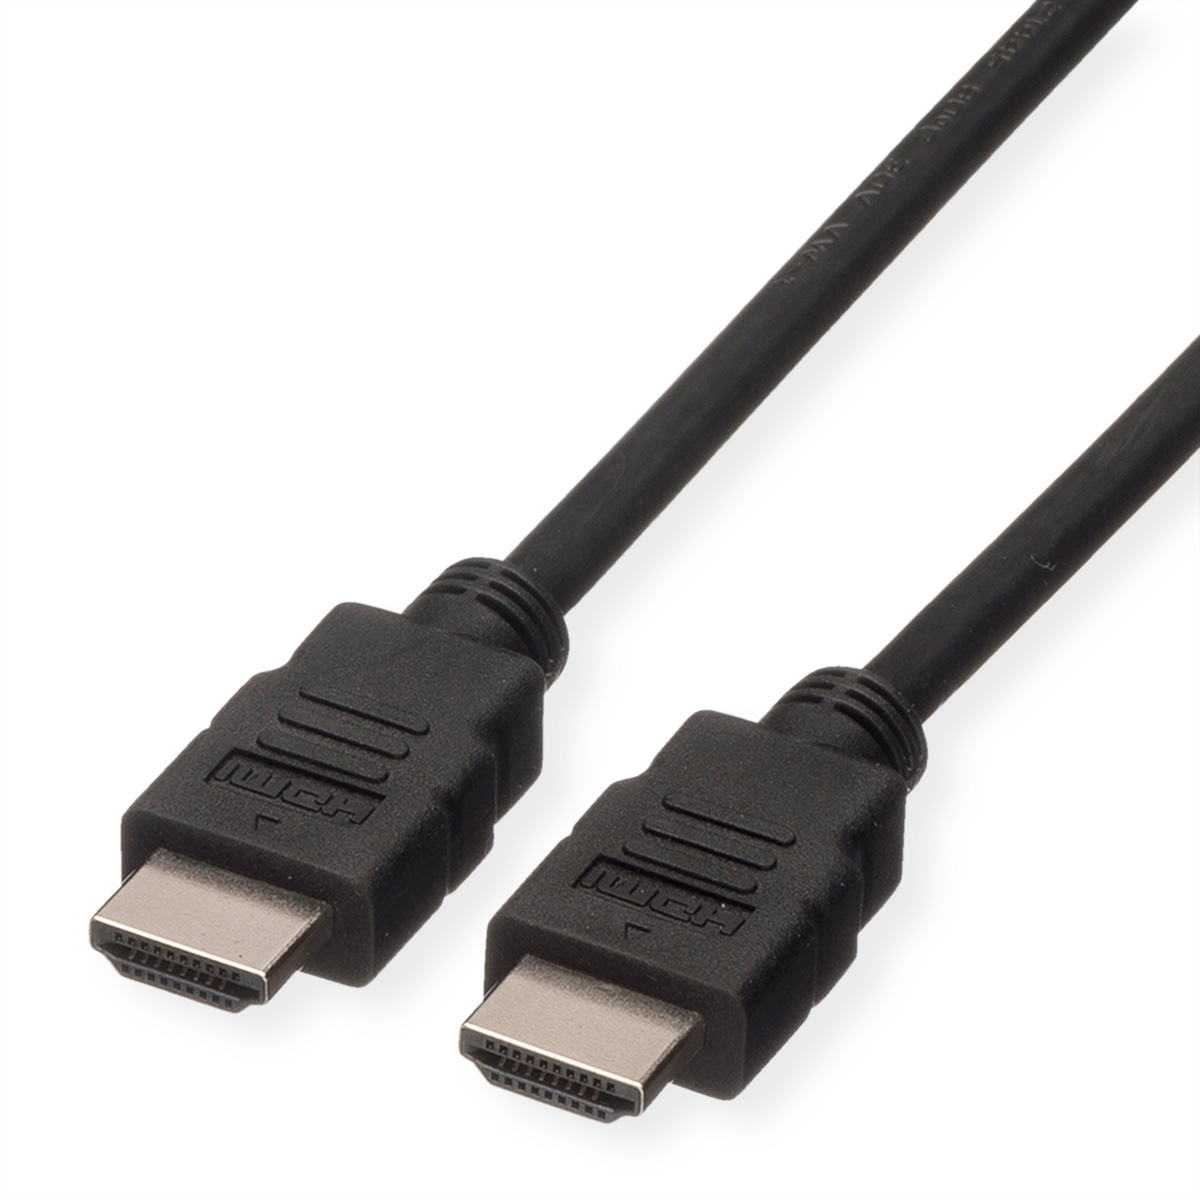 ROLINE HDMI High Speed Kabel mit Ethernet, LSOH, schwarz, 3 m